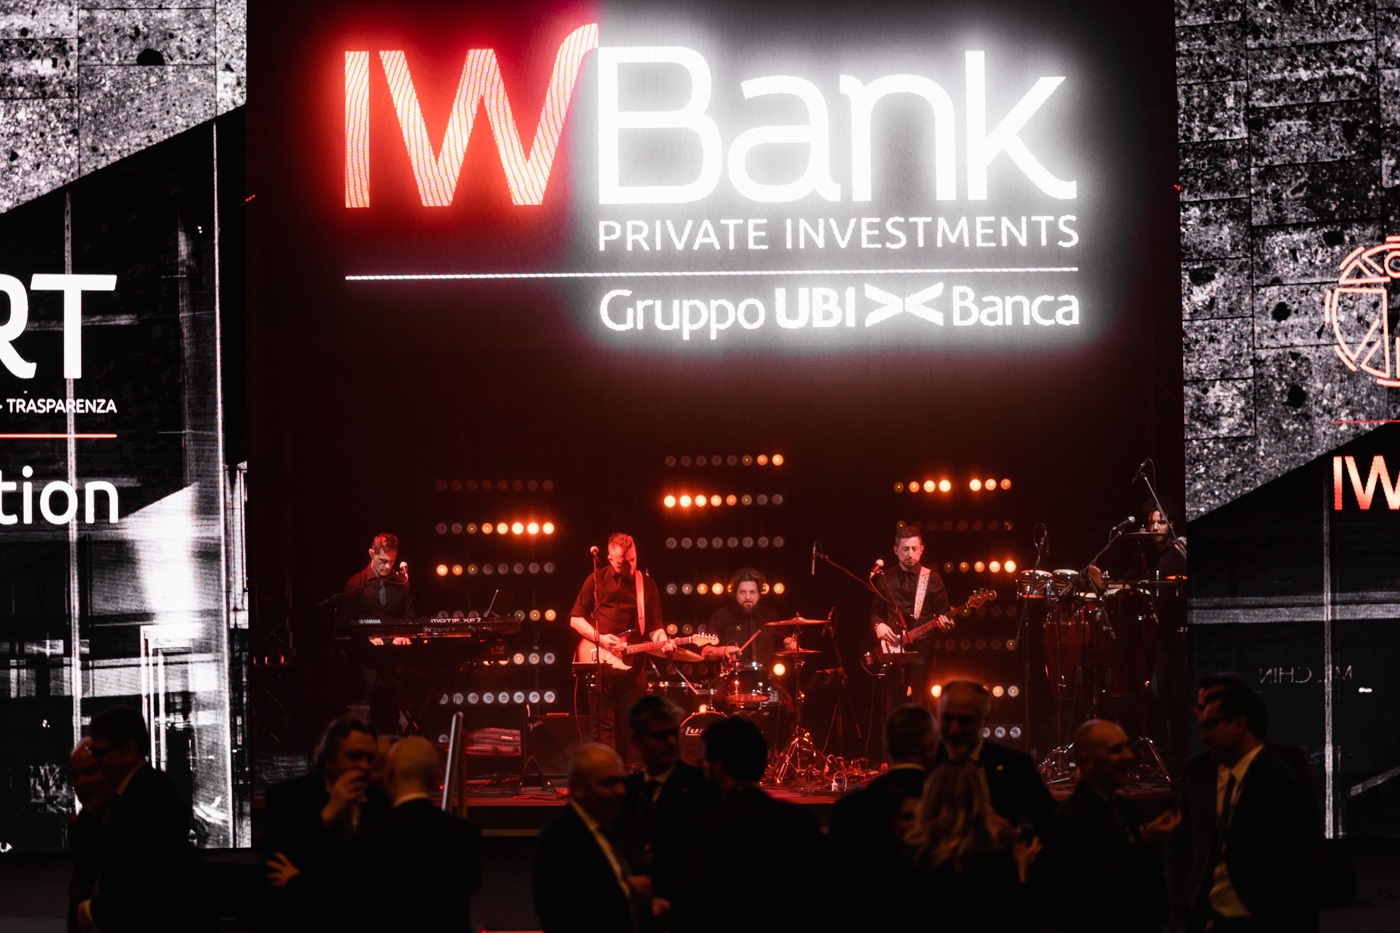 IWBank Private Investments sceglie SG Company per la convention annuale